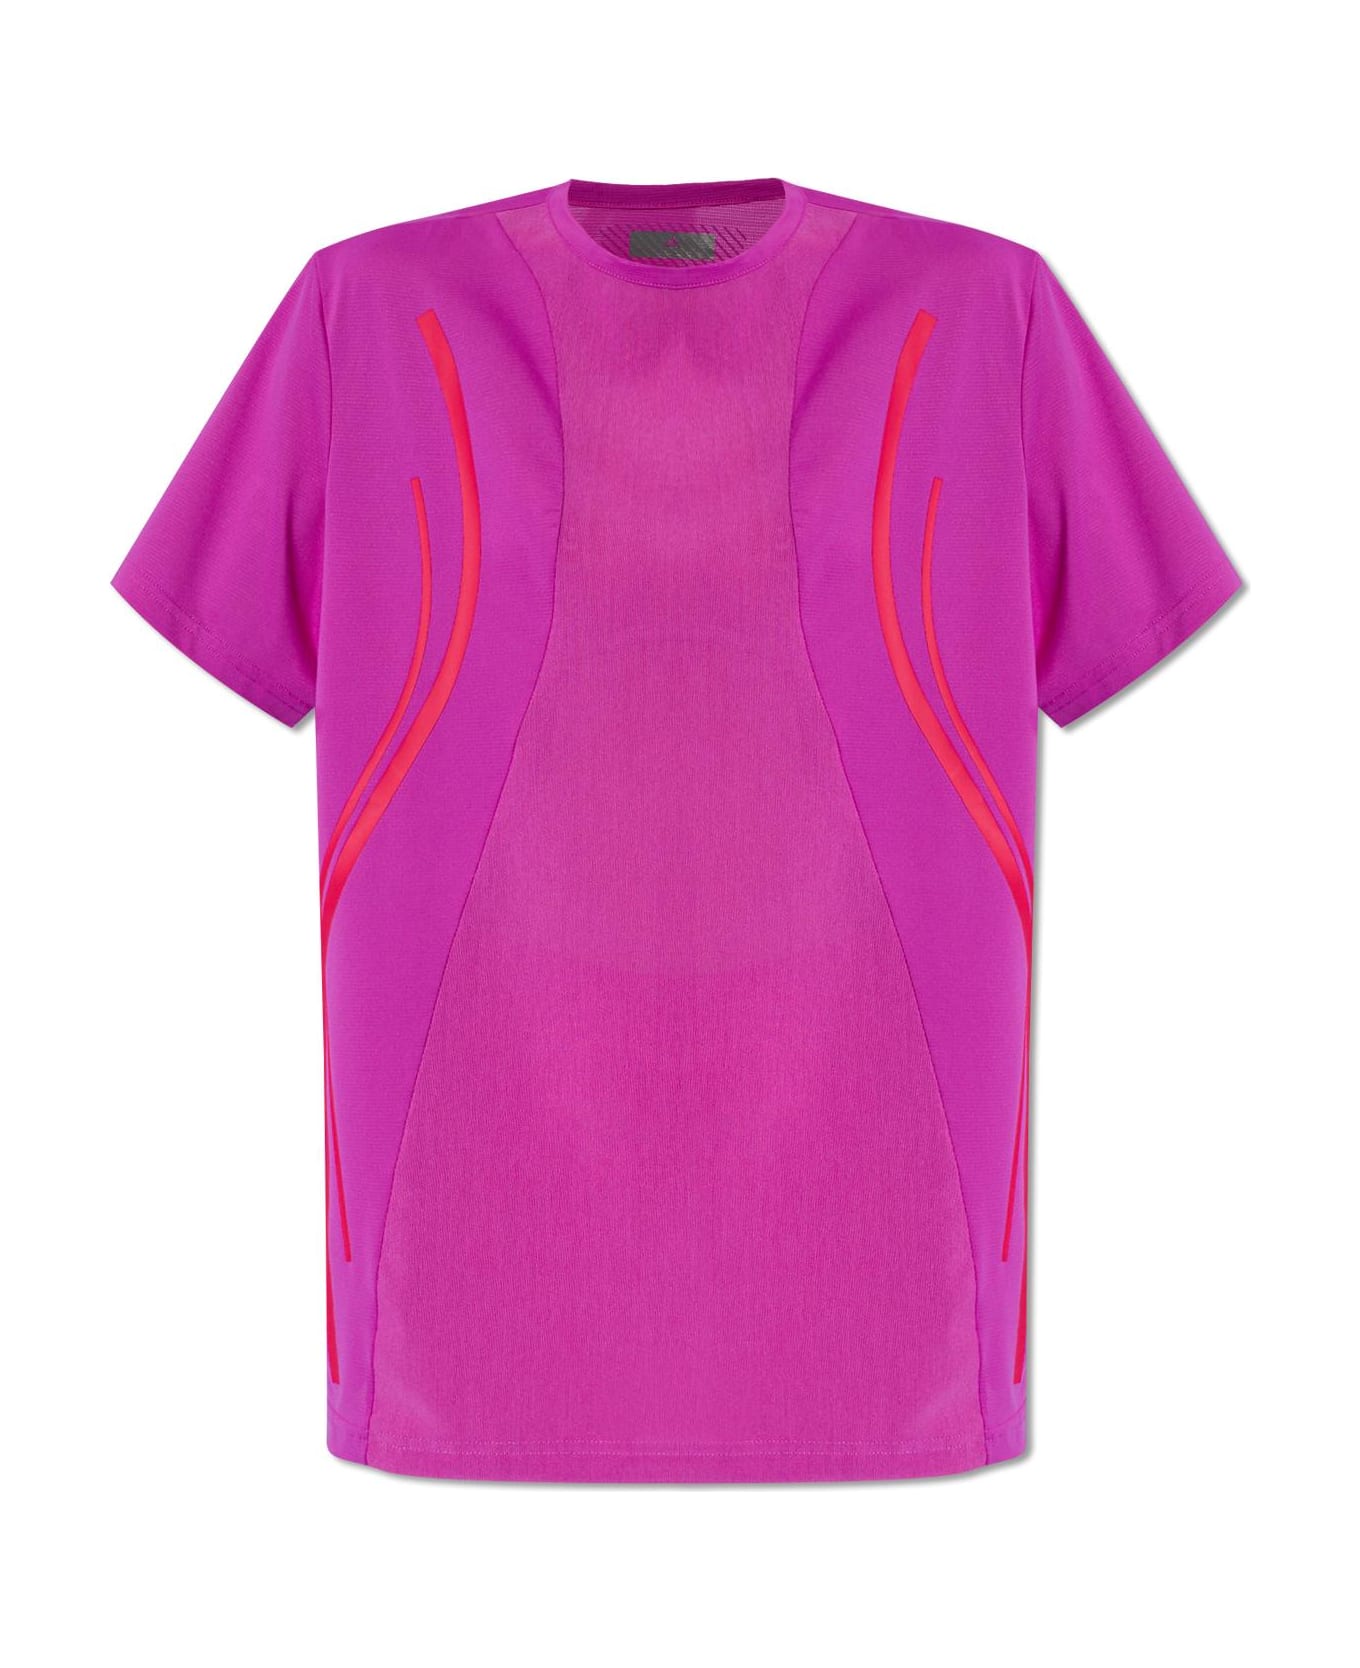 Adidas by Stella McCartney Training T-shirt With Logo - Fuchsia